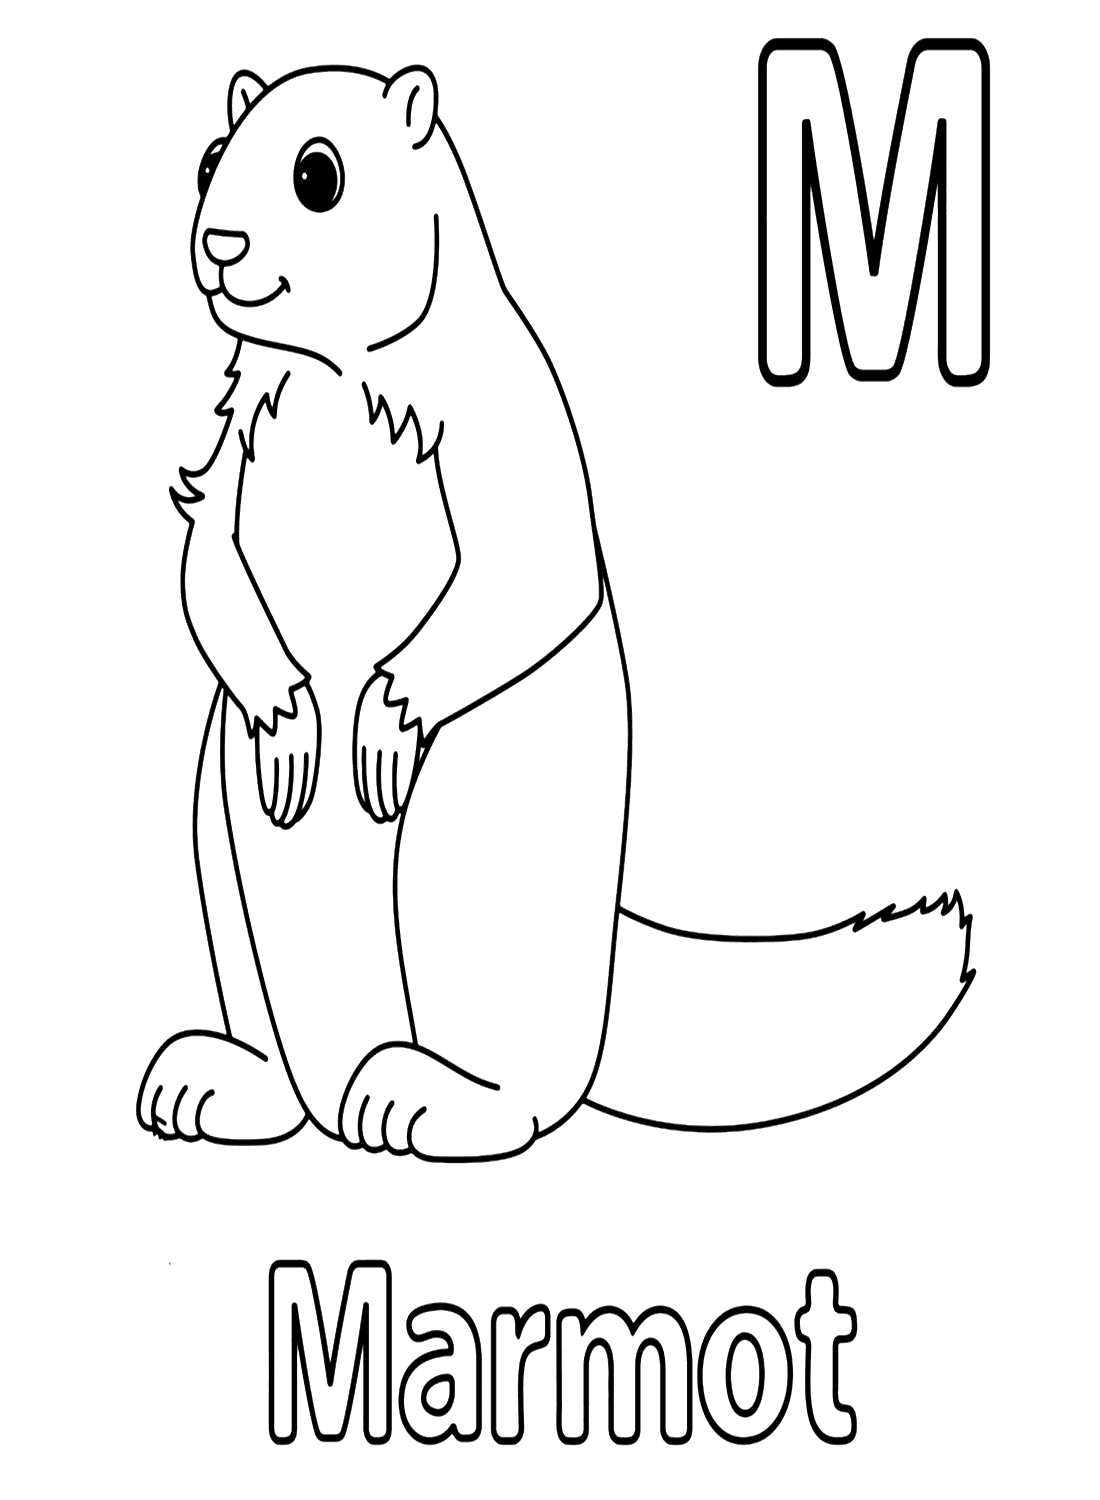 来自 Marmot 的 Marmot 字母 M